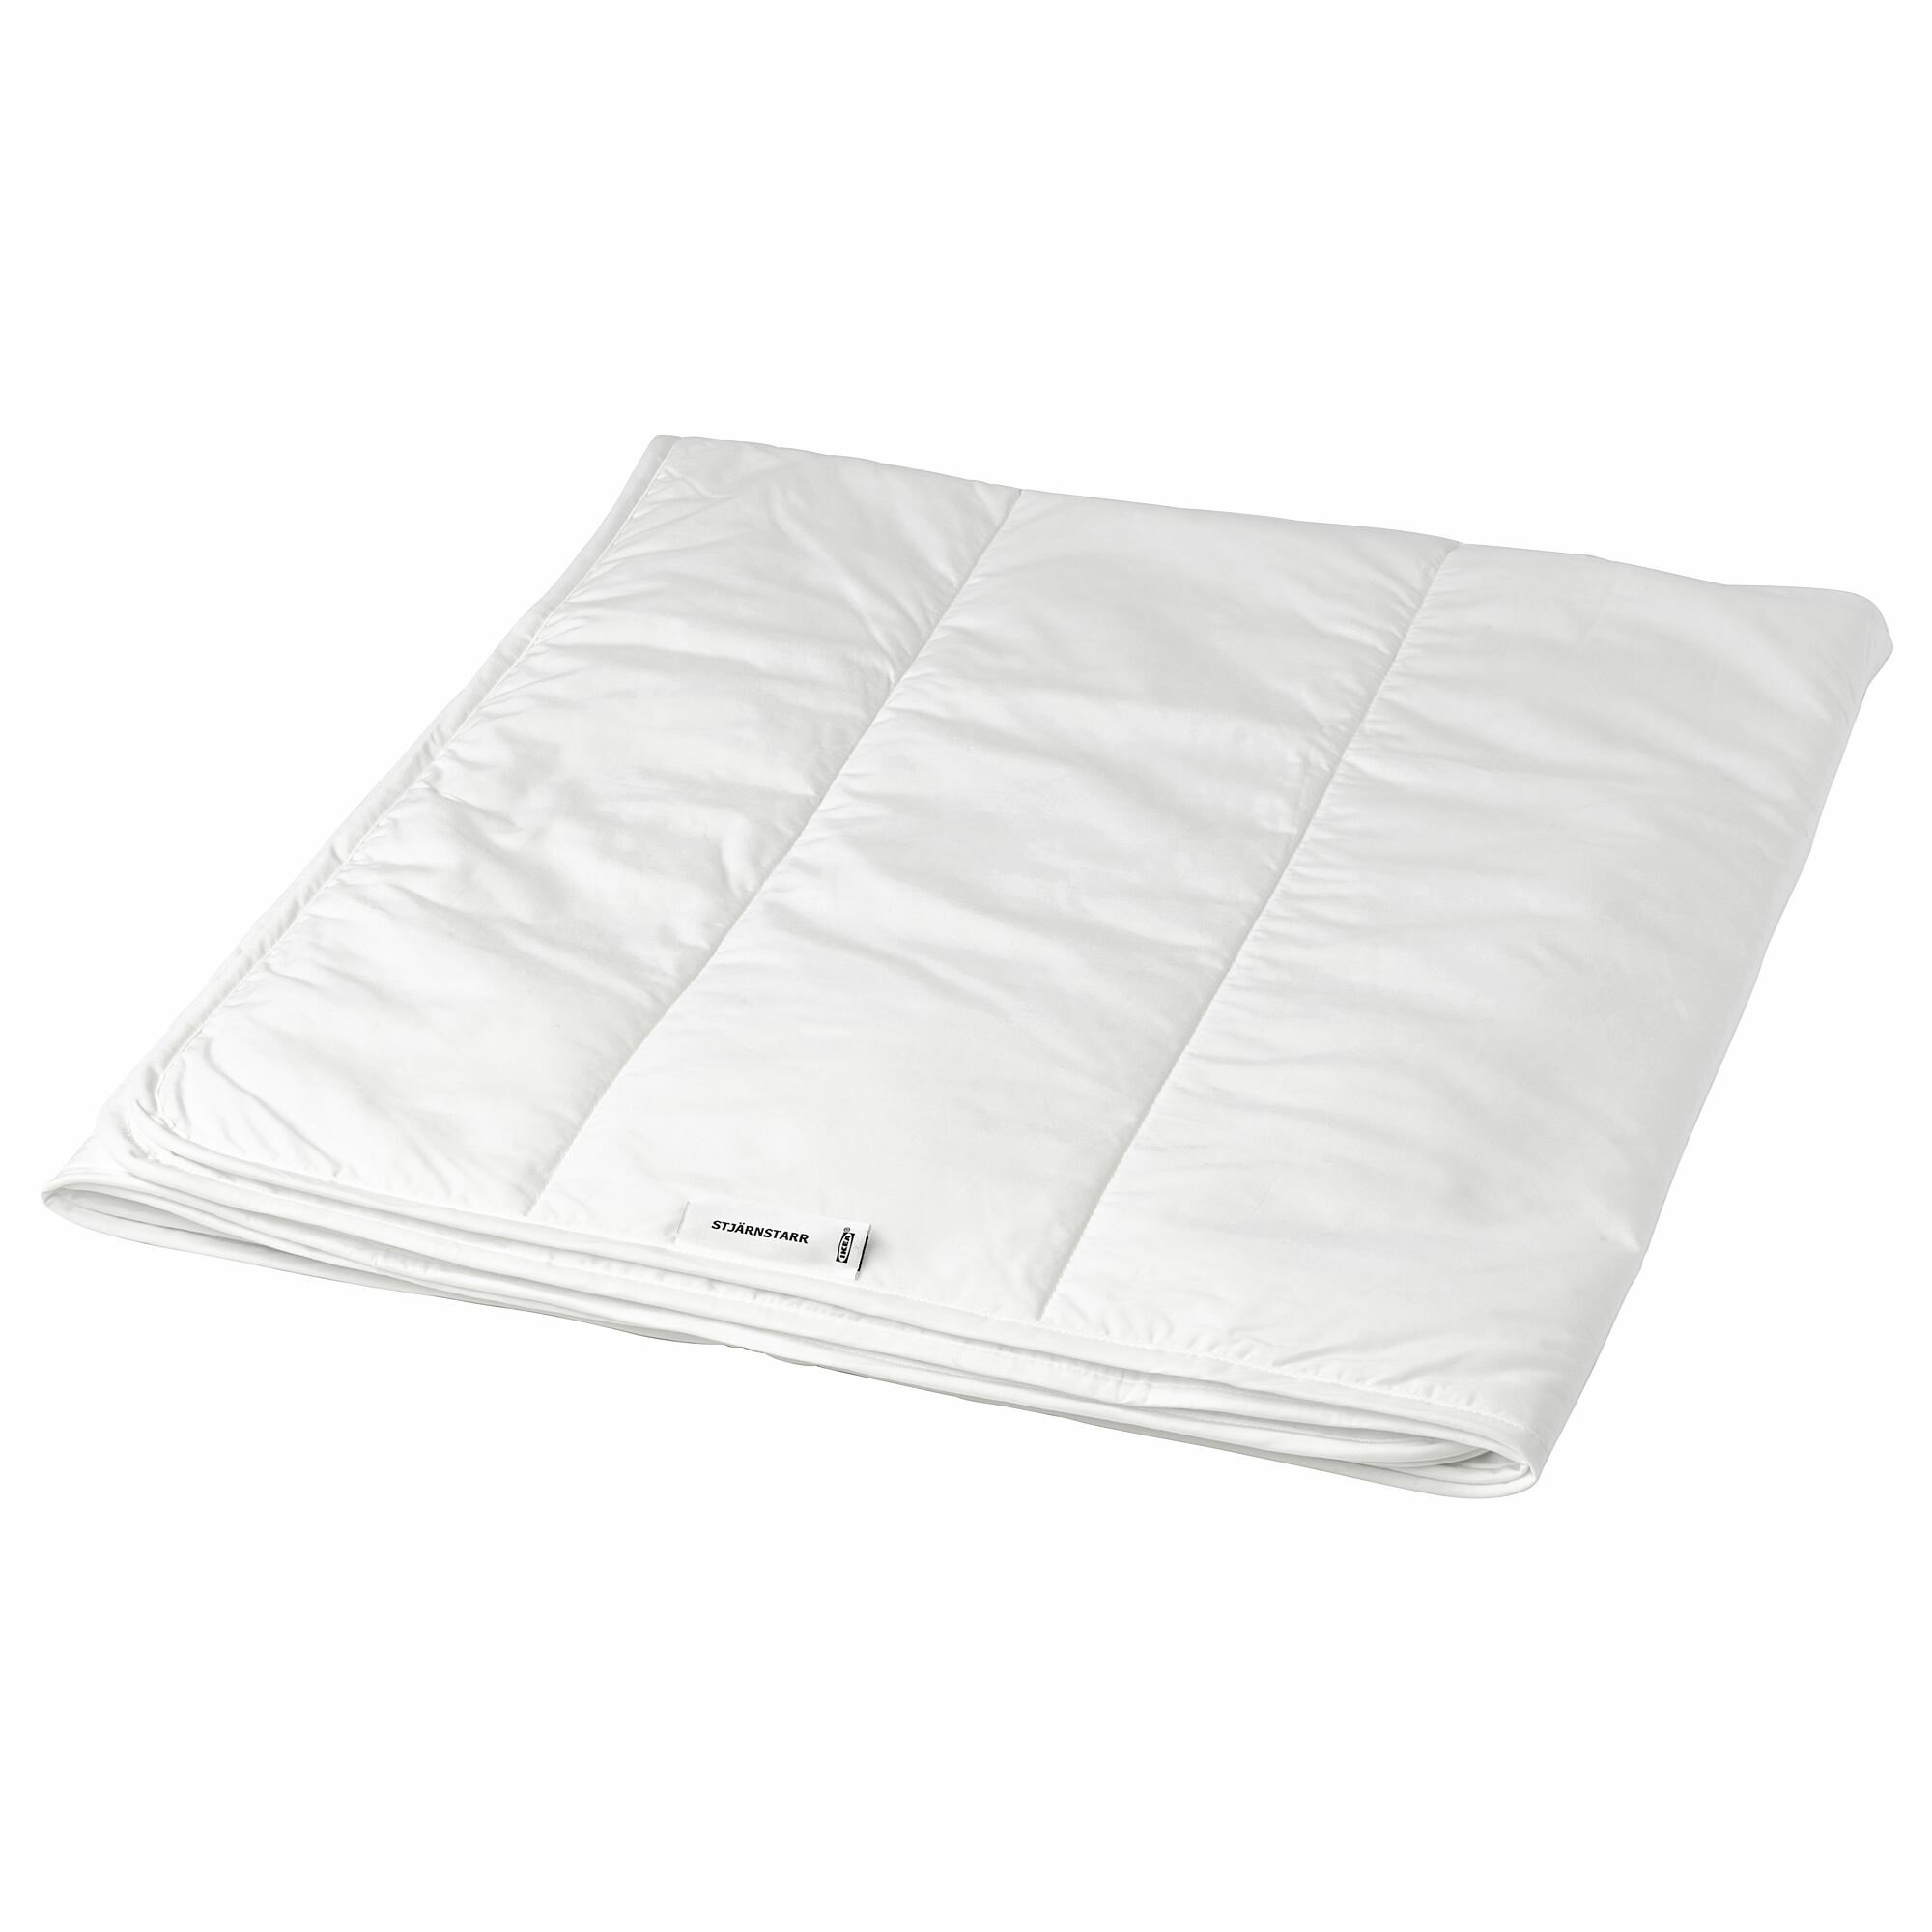 Икея / IKEA STJARNSTARR, стьярнстарр, односпальное одеяло, белое, 150x200 см, сохраняет прохладу